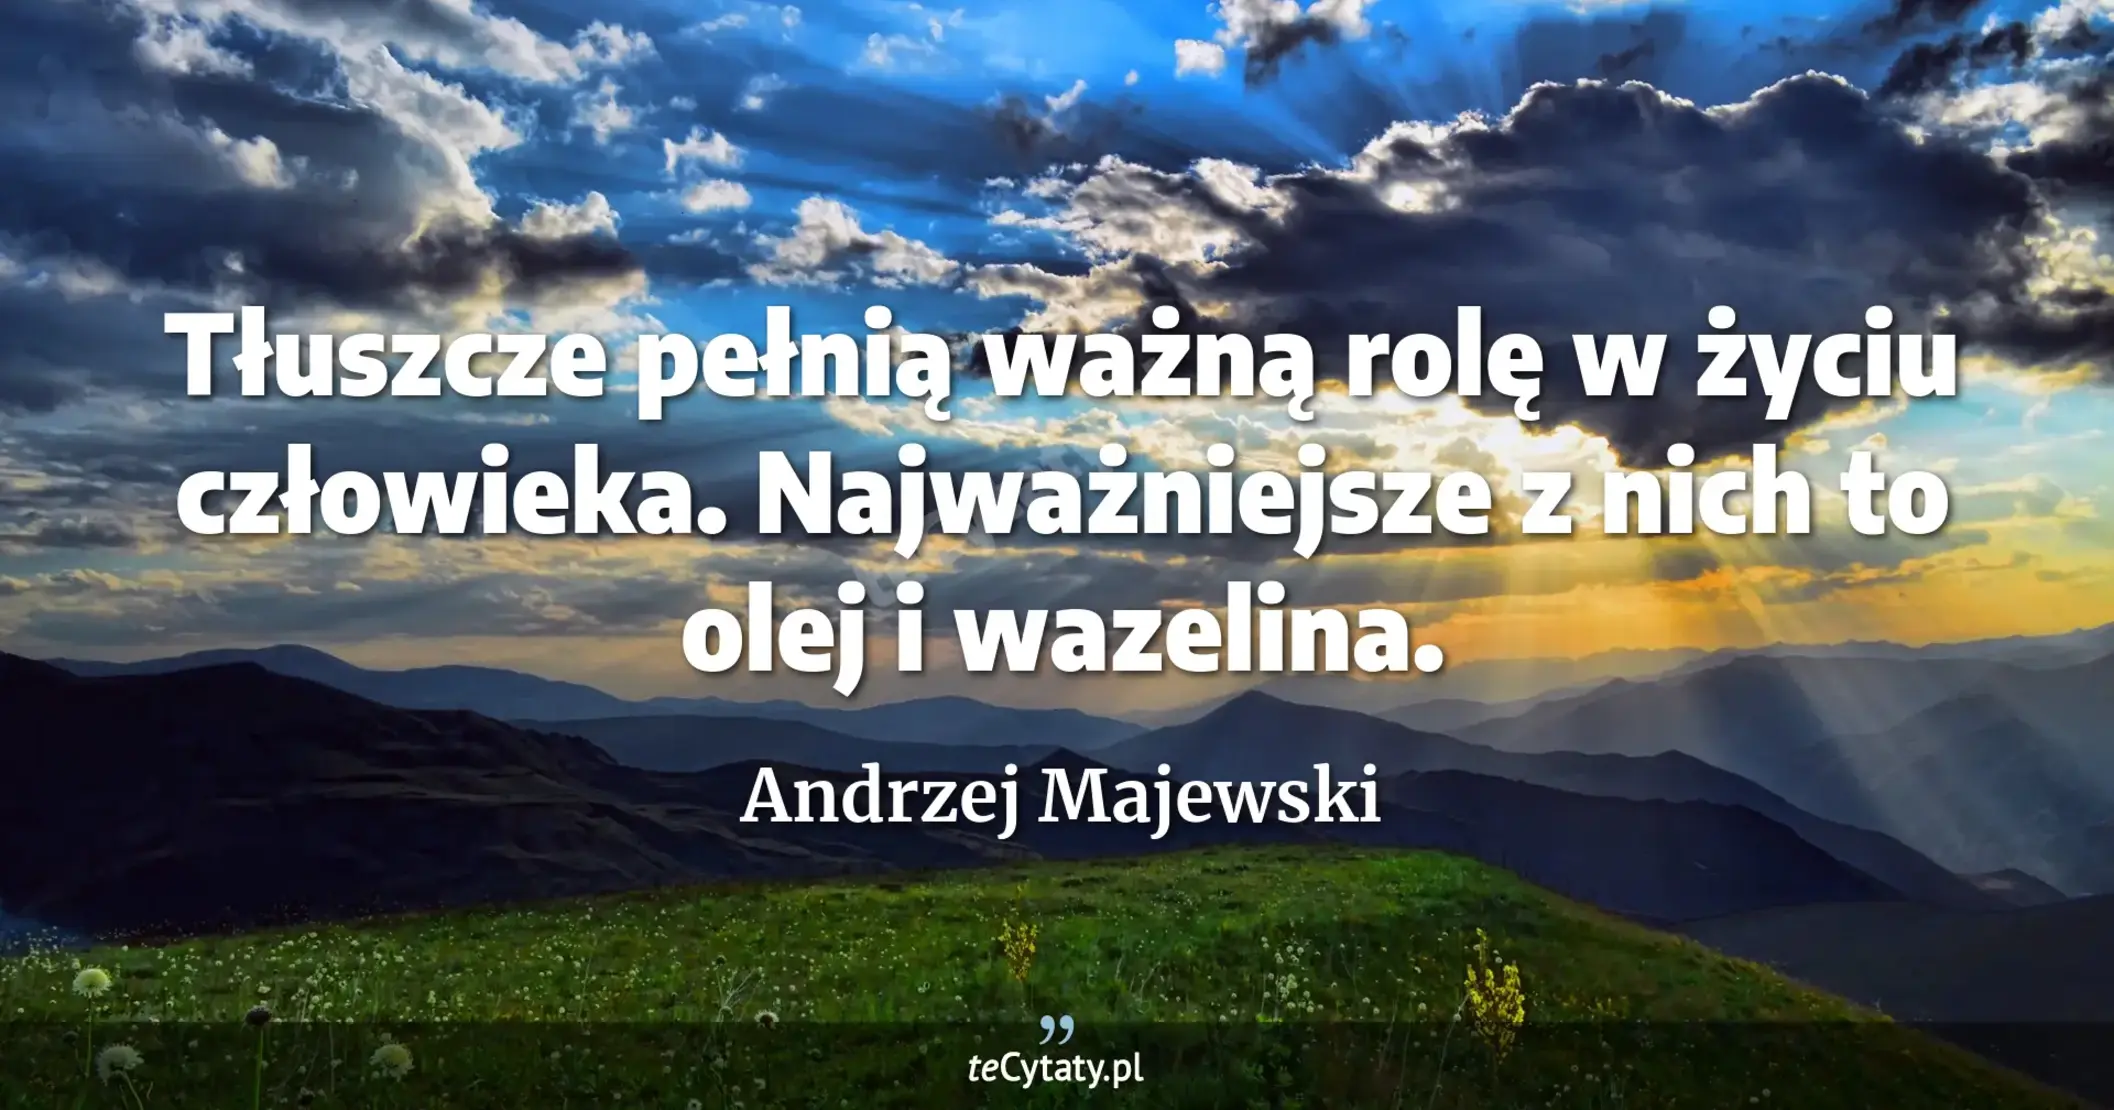 Tłuszcze pełnią ważną rolę w życiu człowieka. Najważniejsze z nich to olej i wazelina. - Andrzej Majewski